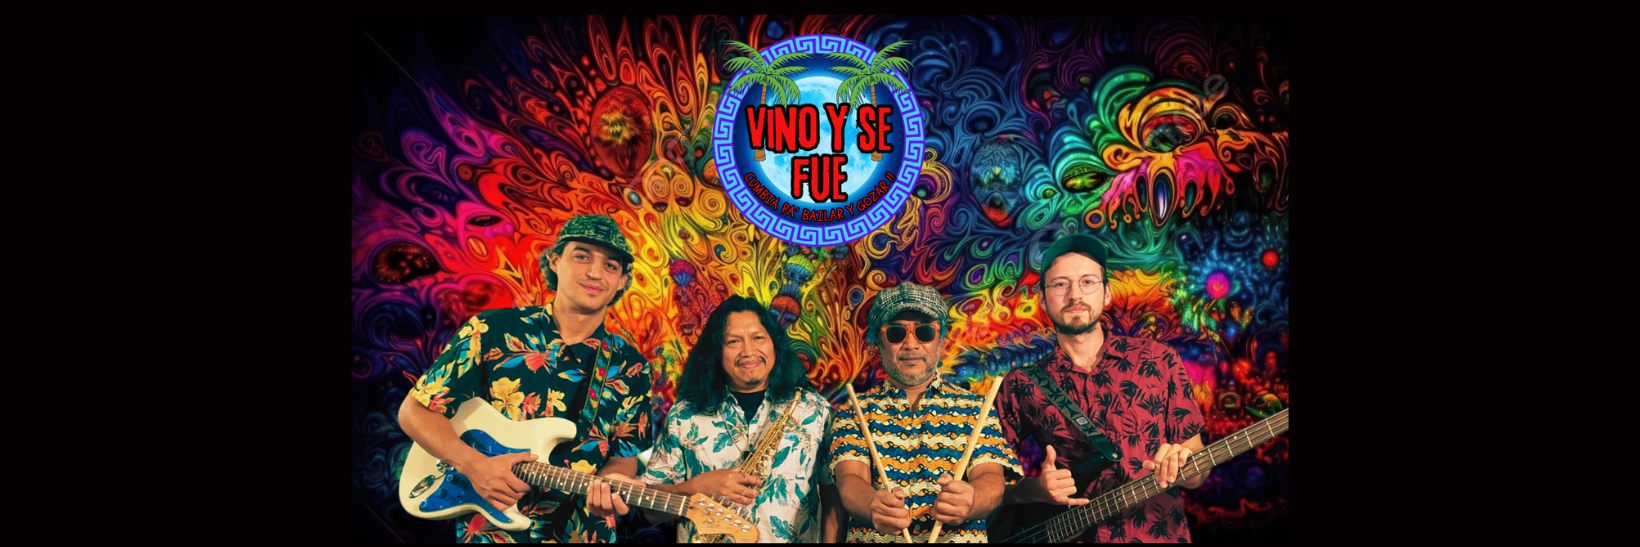 Vino y se Fue , groupe de musique Cumbia en représentation à Bouches du Rhône - photo de couverture